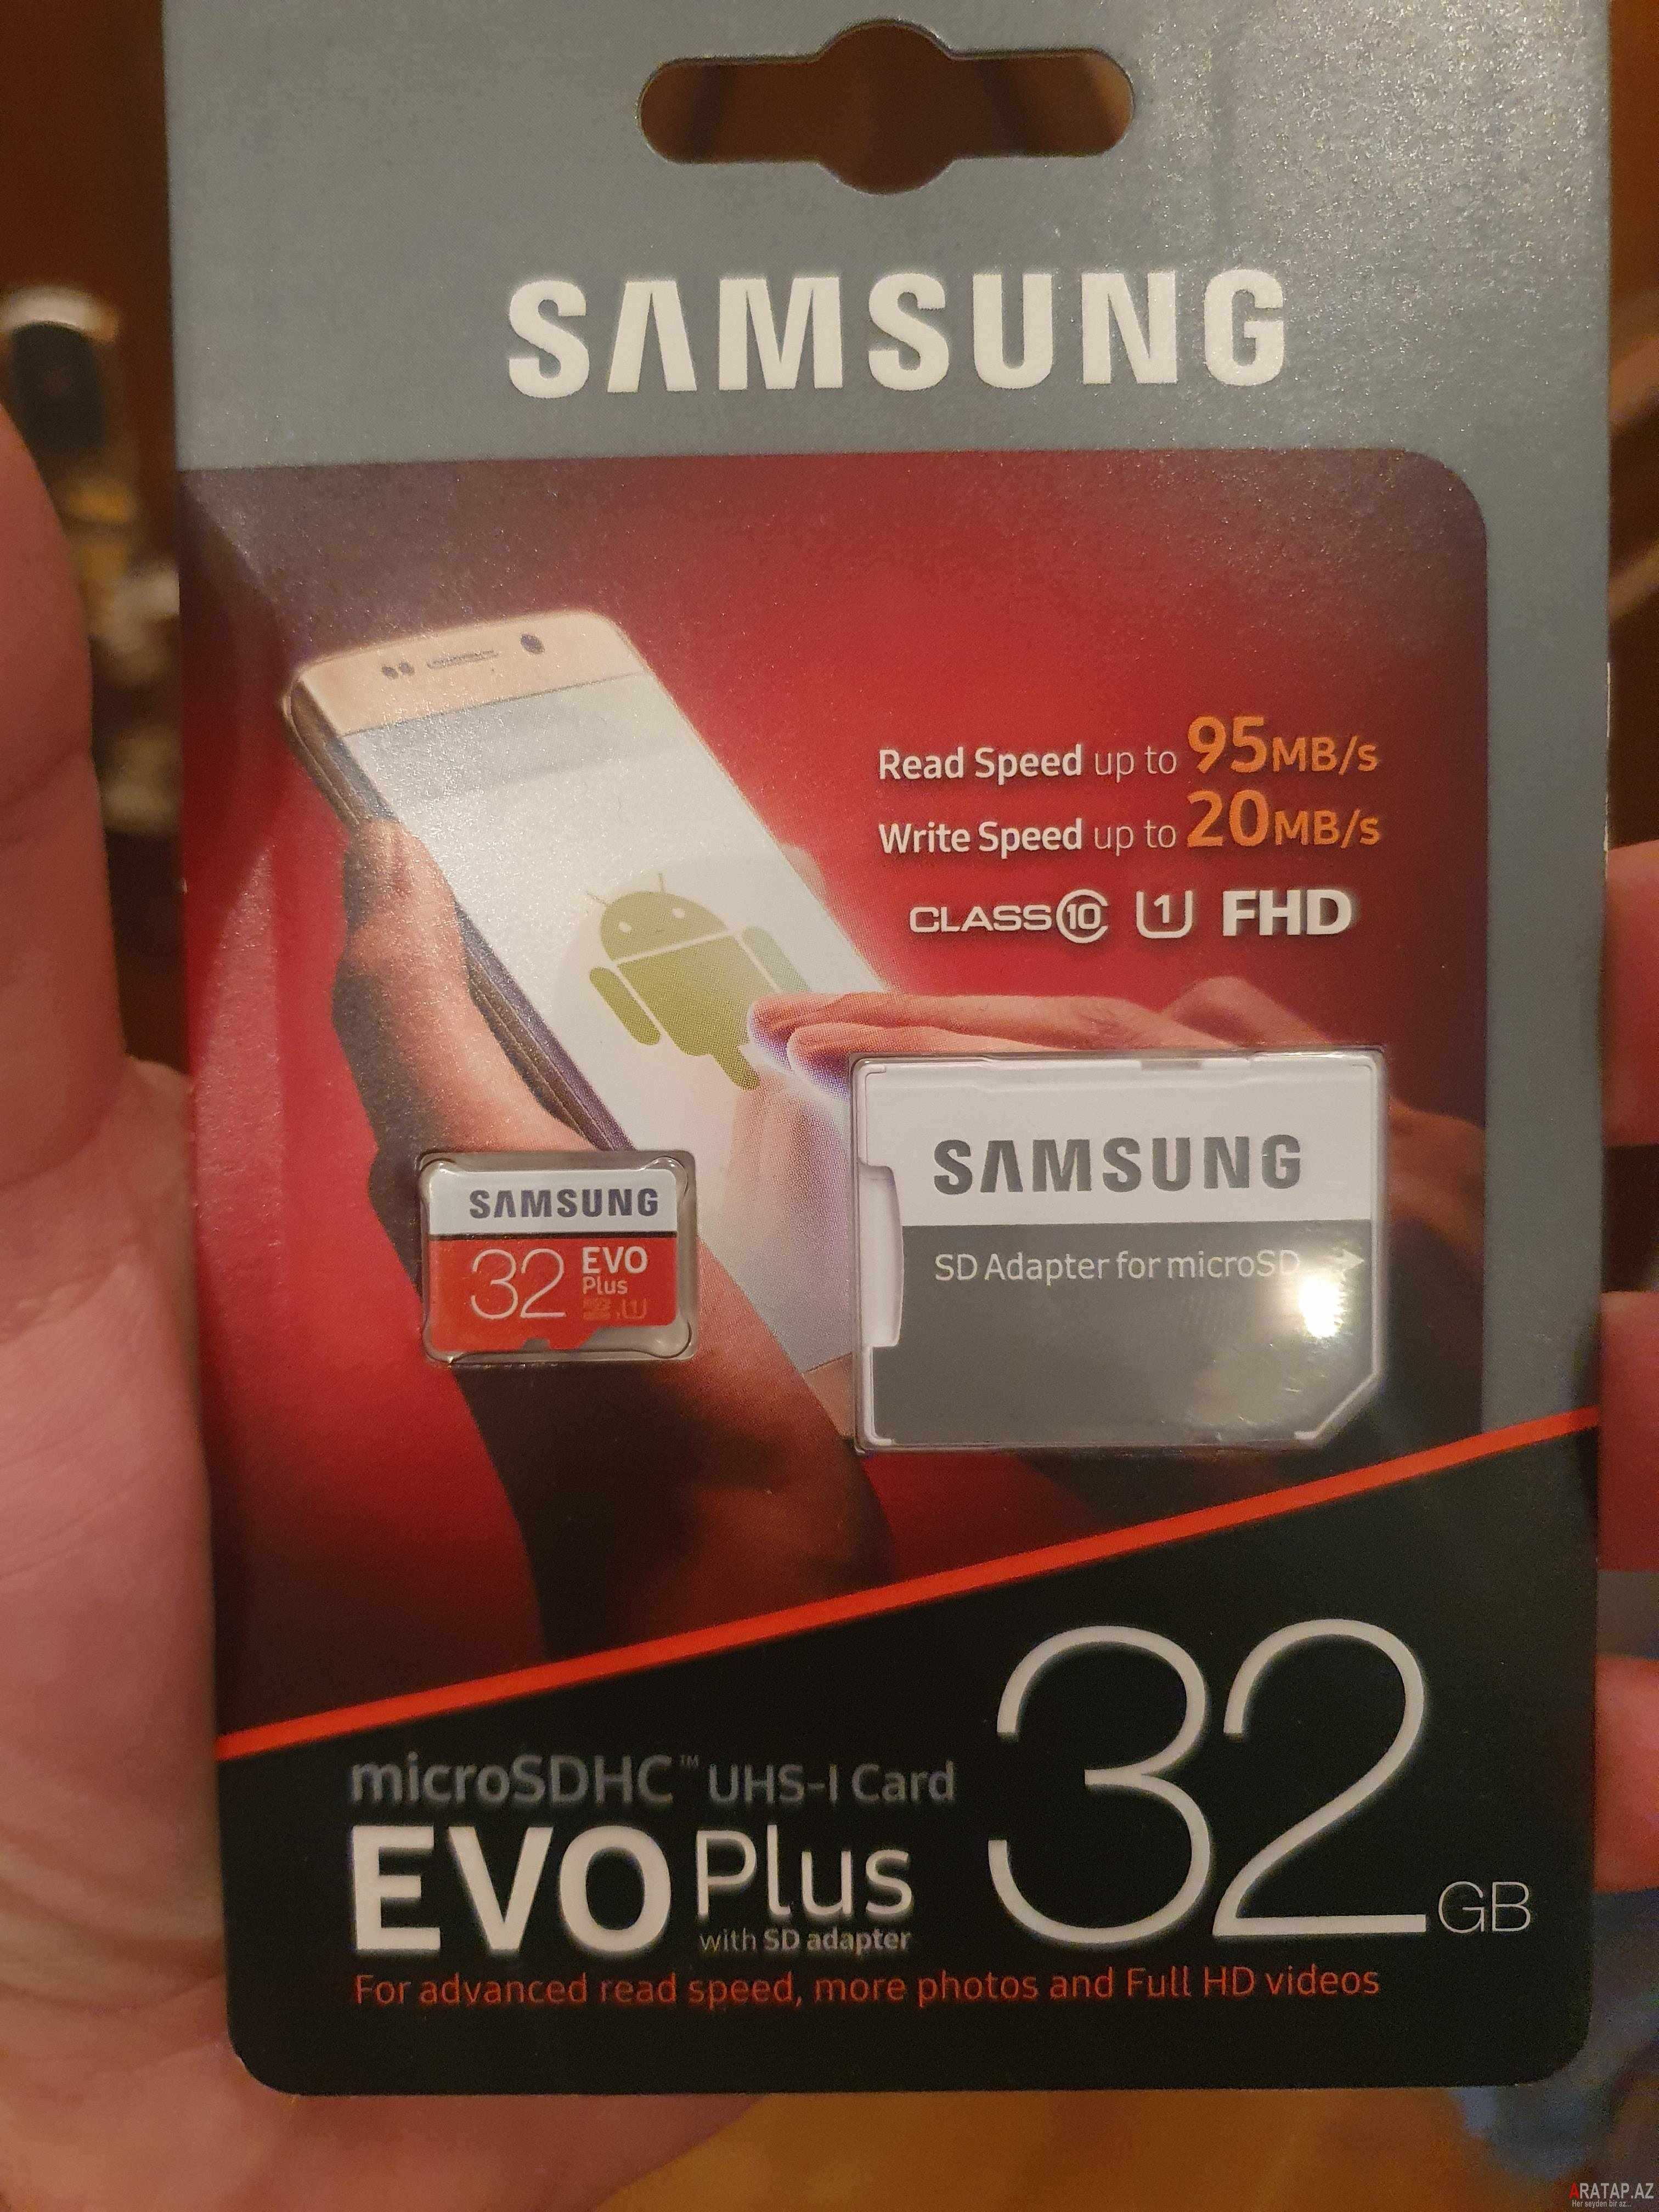 Samsung Yaddaş kartı 32 Gb Mikrokart teıefon üçün mikro  Surət - 95 Mb / San Microkart mikrocard